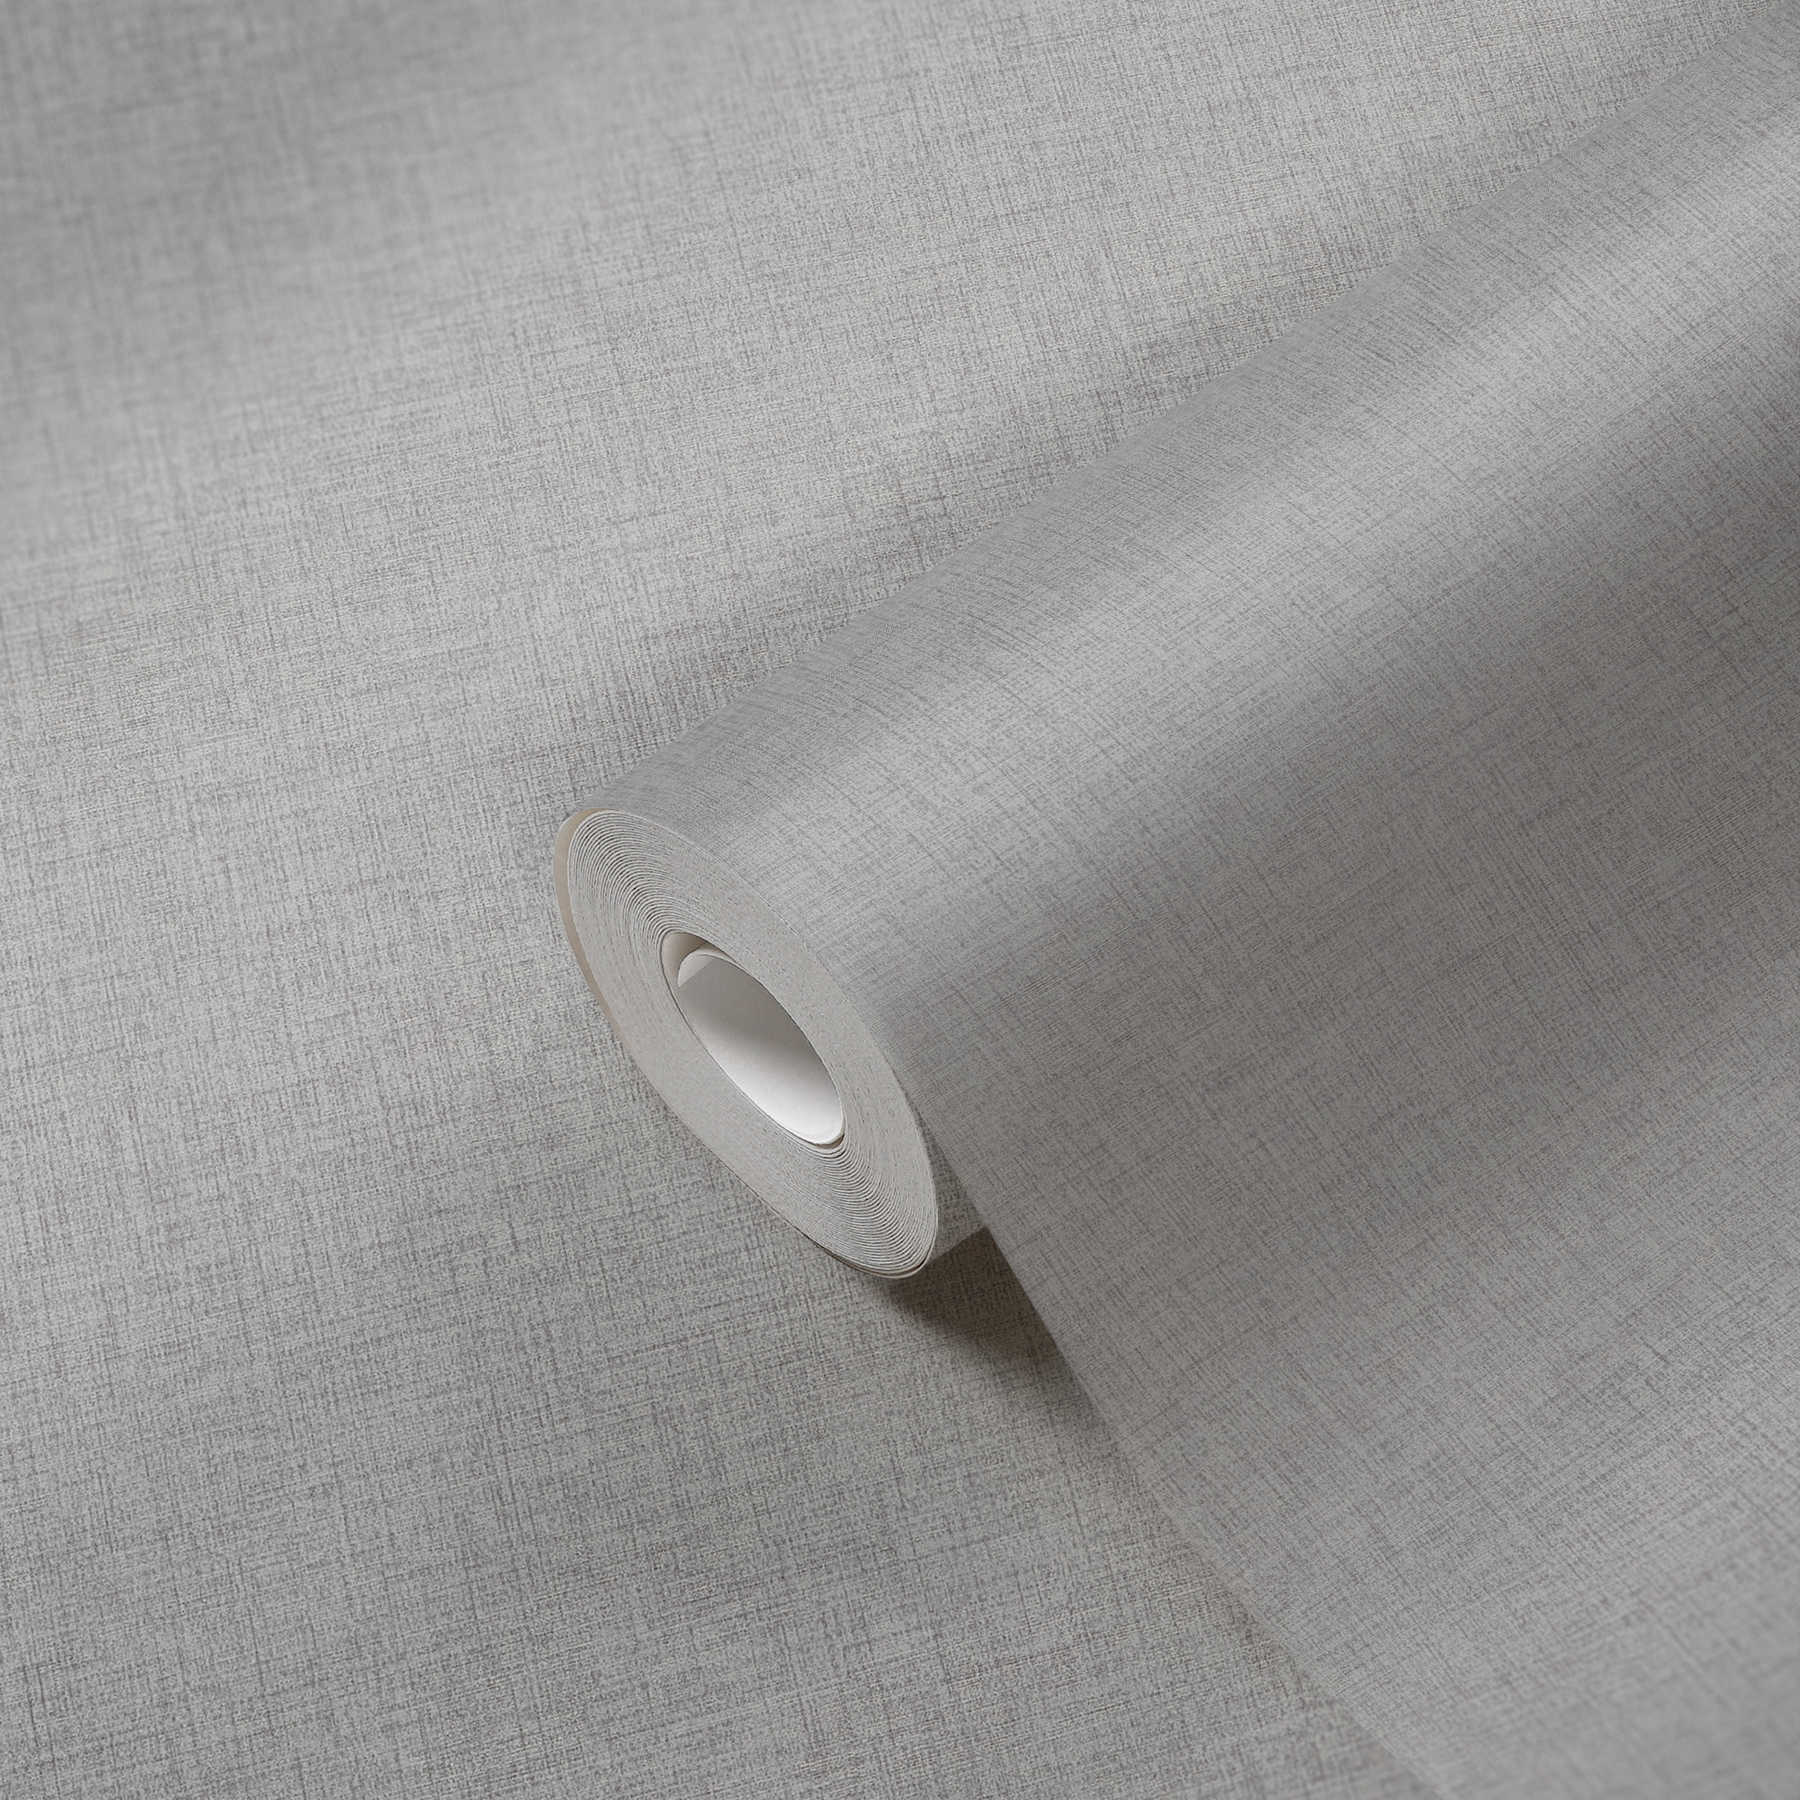             Eenheidsbehang met subtiele linnenlook - grijs
        